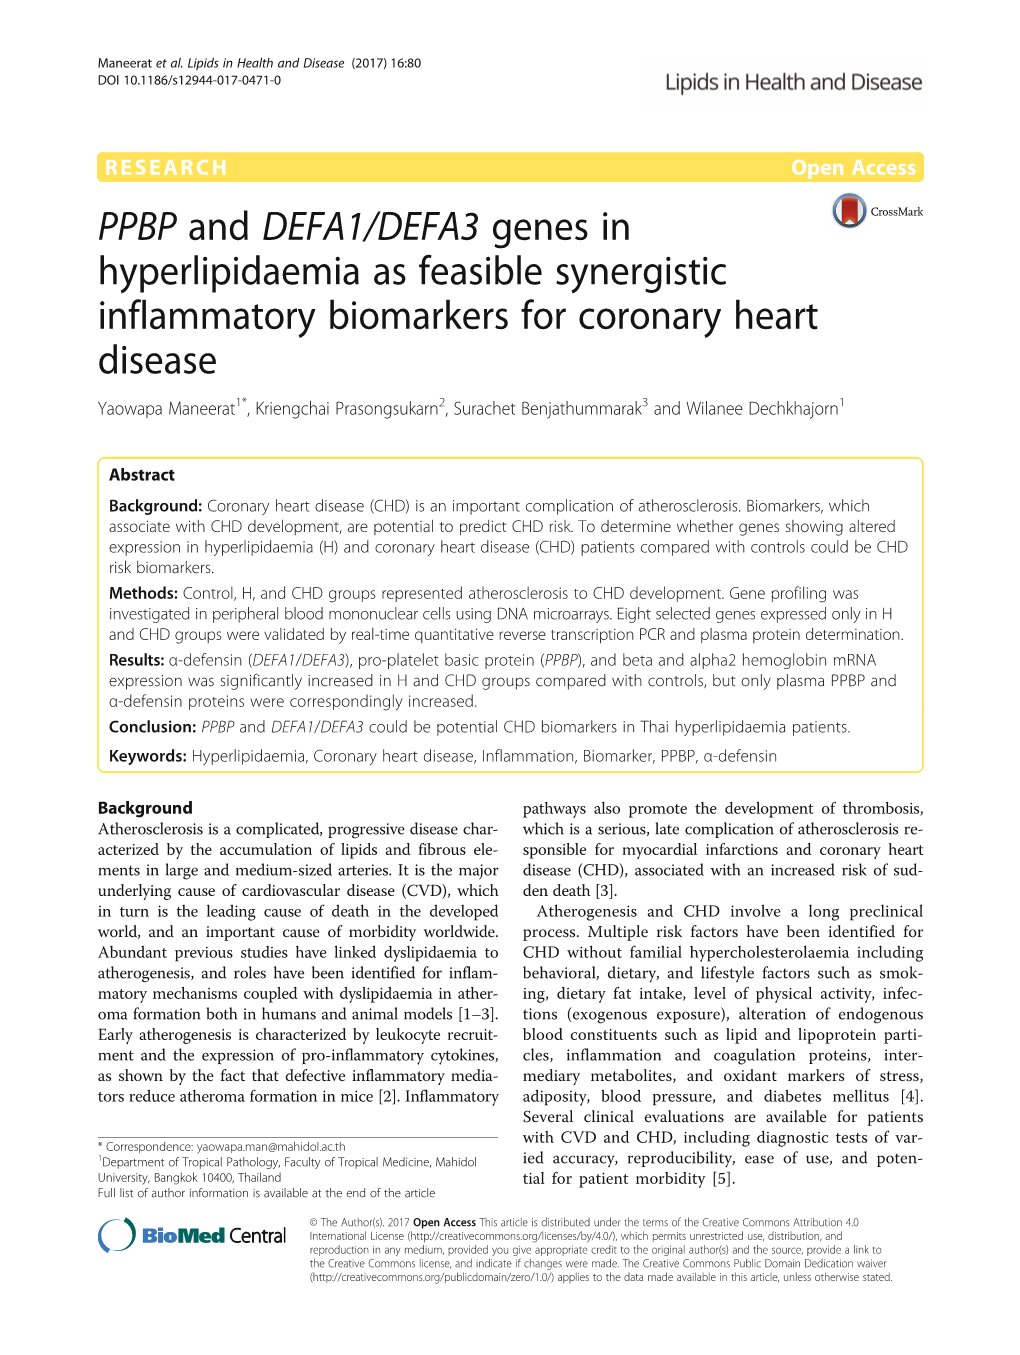 PPBP and DEFA1/DEFA3 Genes in Hyperlipidaemia As Feasible